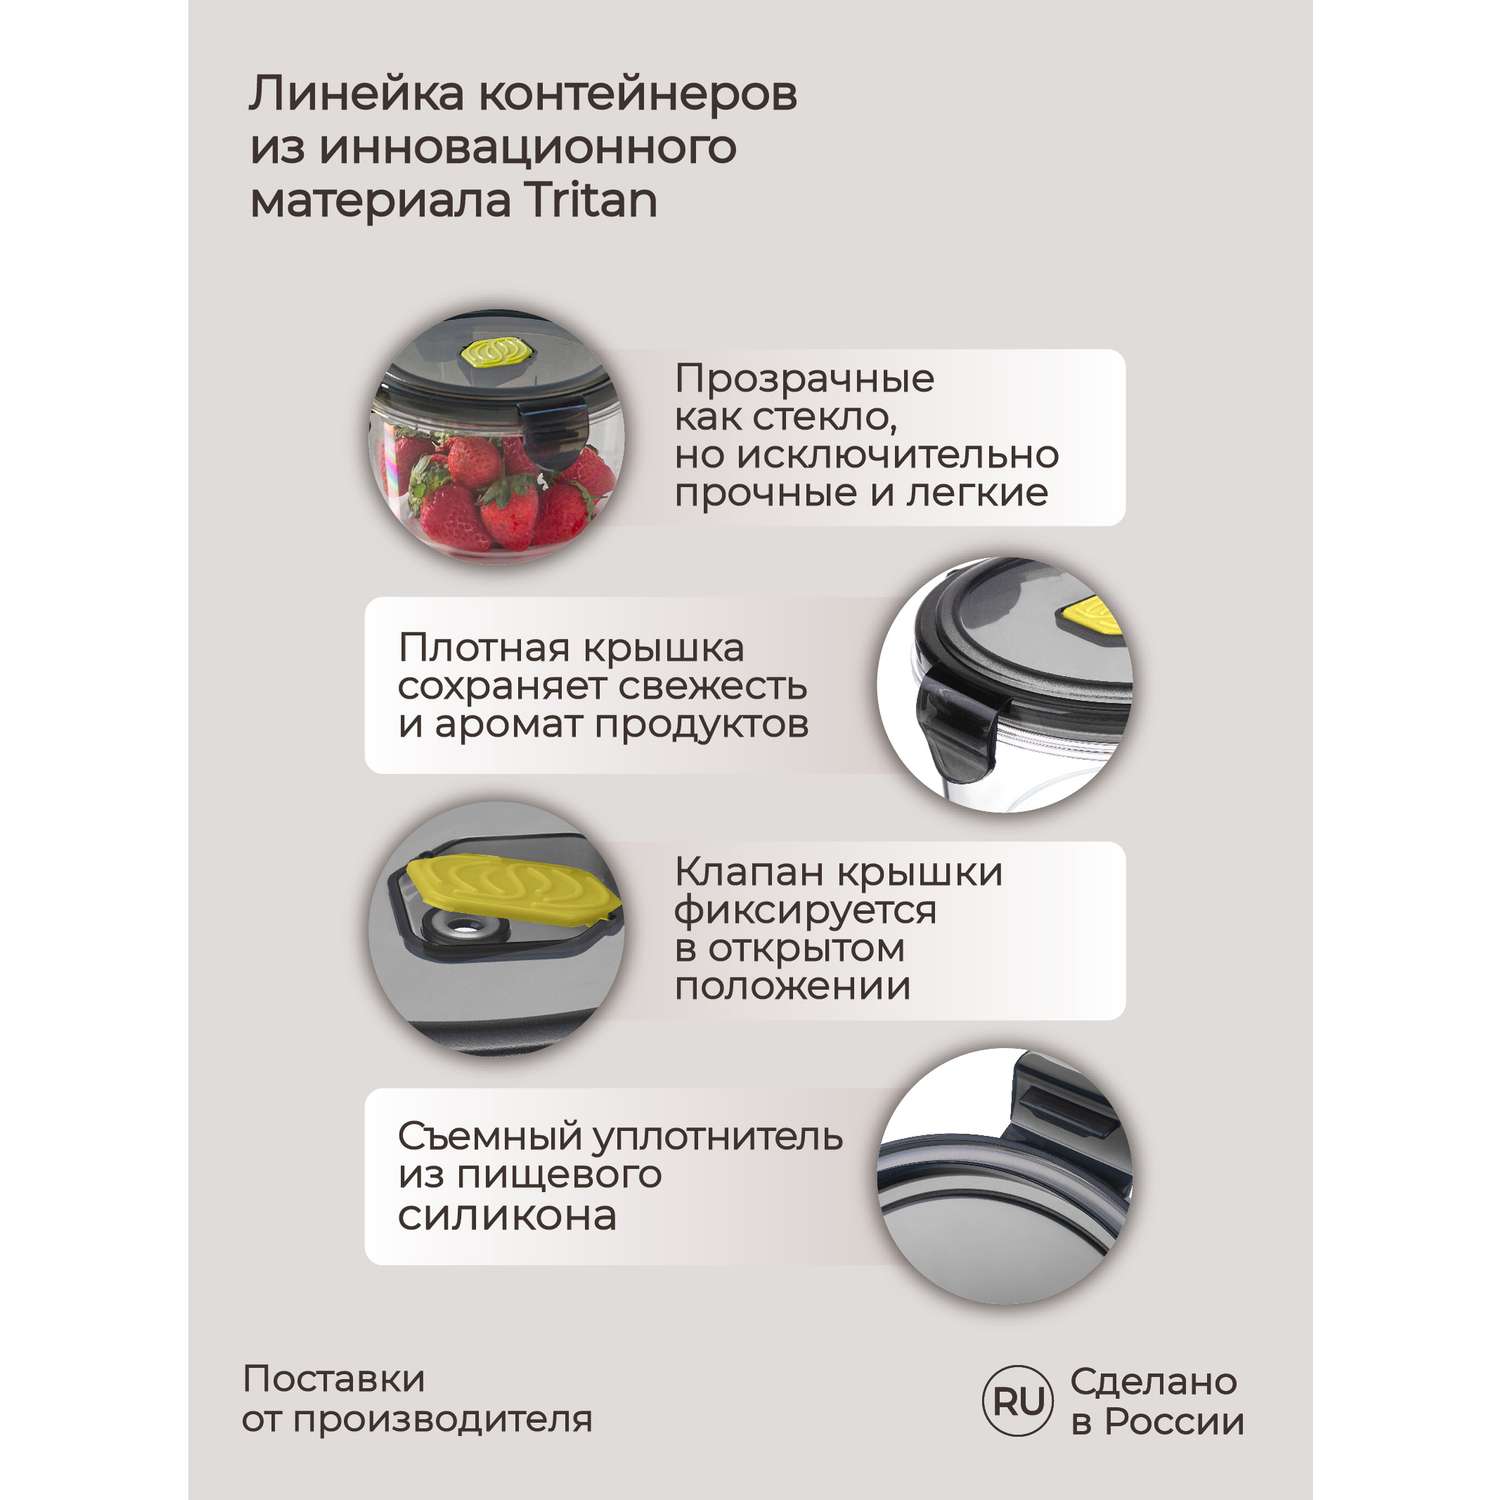 Контейнер Phibo для продуктов герметичный с клапаном Brilliant круглый 0.6л черный - фото 3